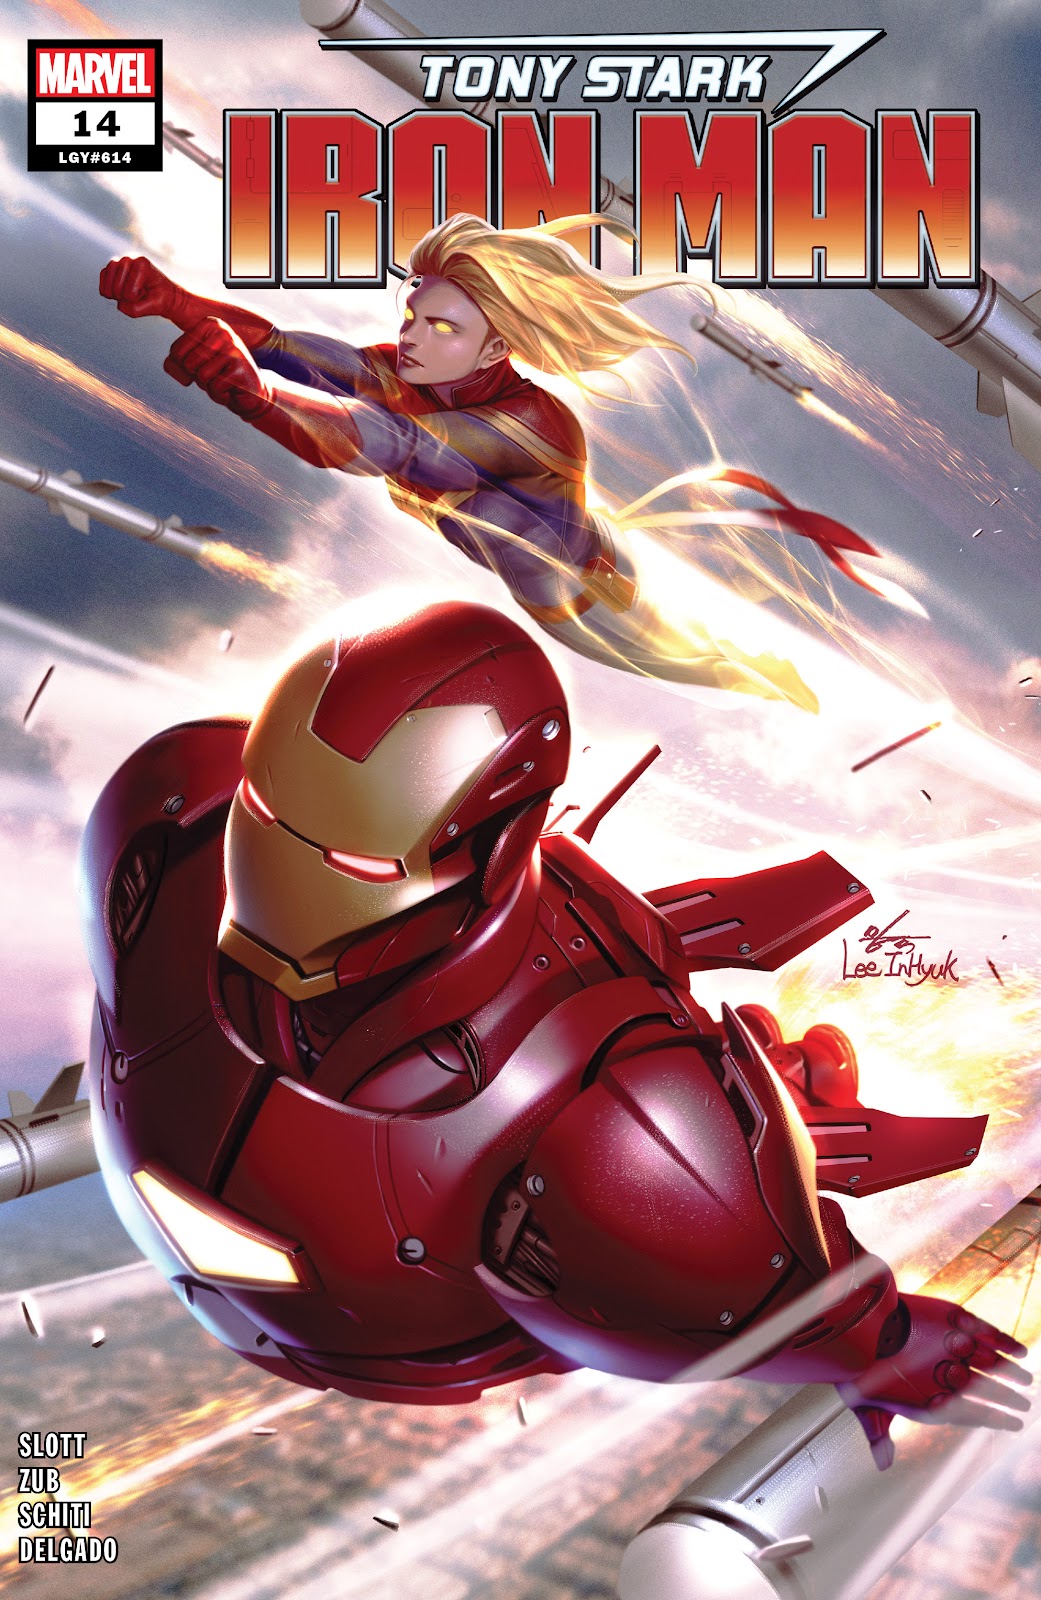 Tony Stark: Iron Man issue 14 - Page 1